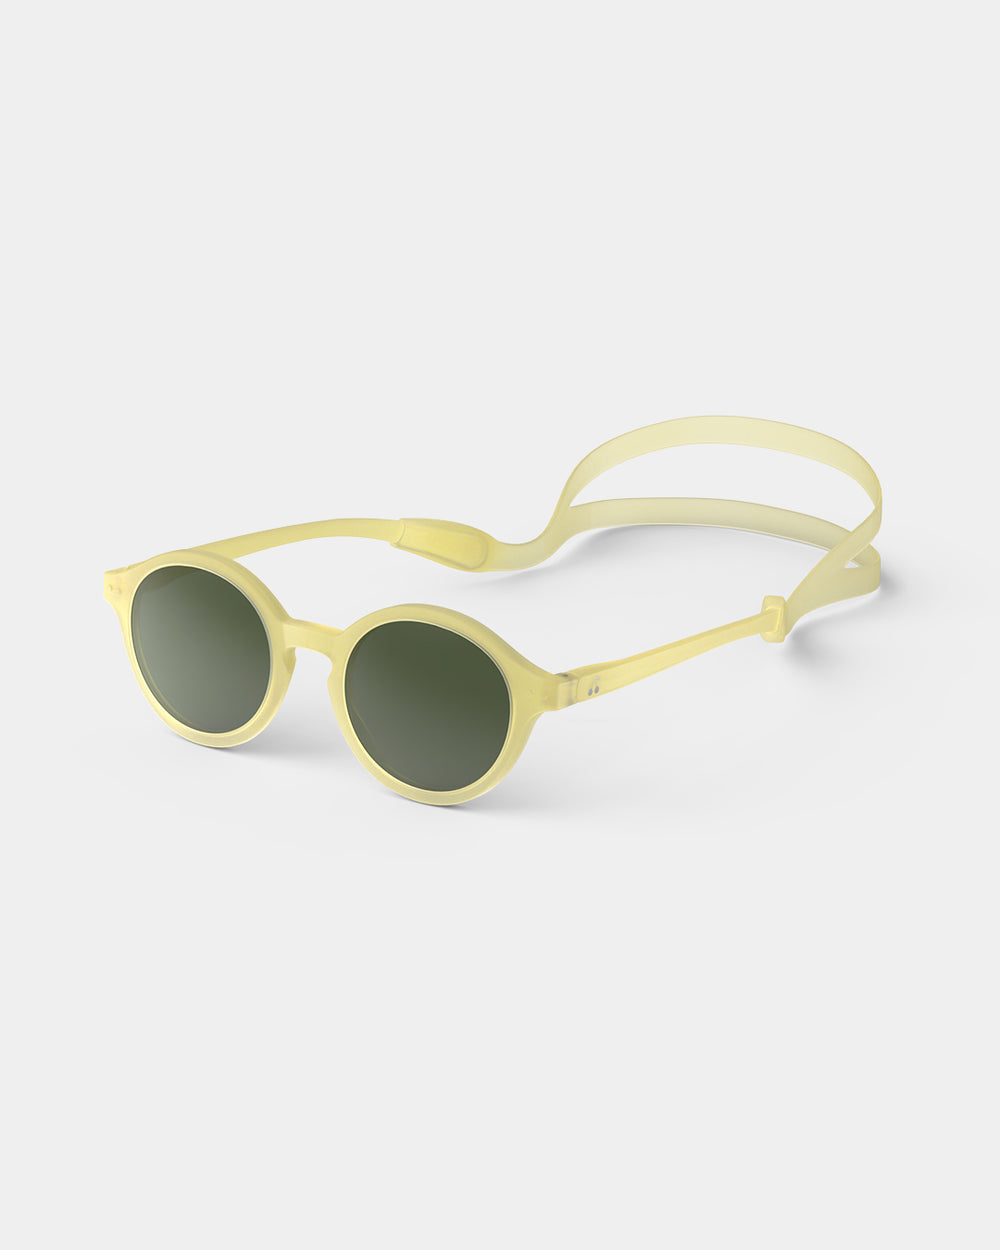 Bonpoint x Izipizi Kids Plus Sunglasses light yellow